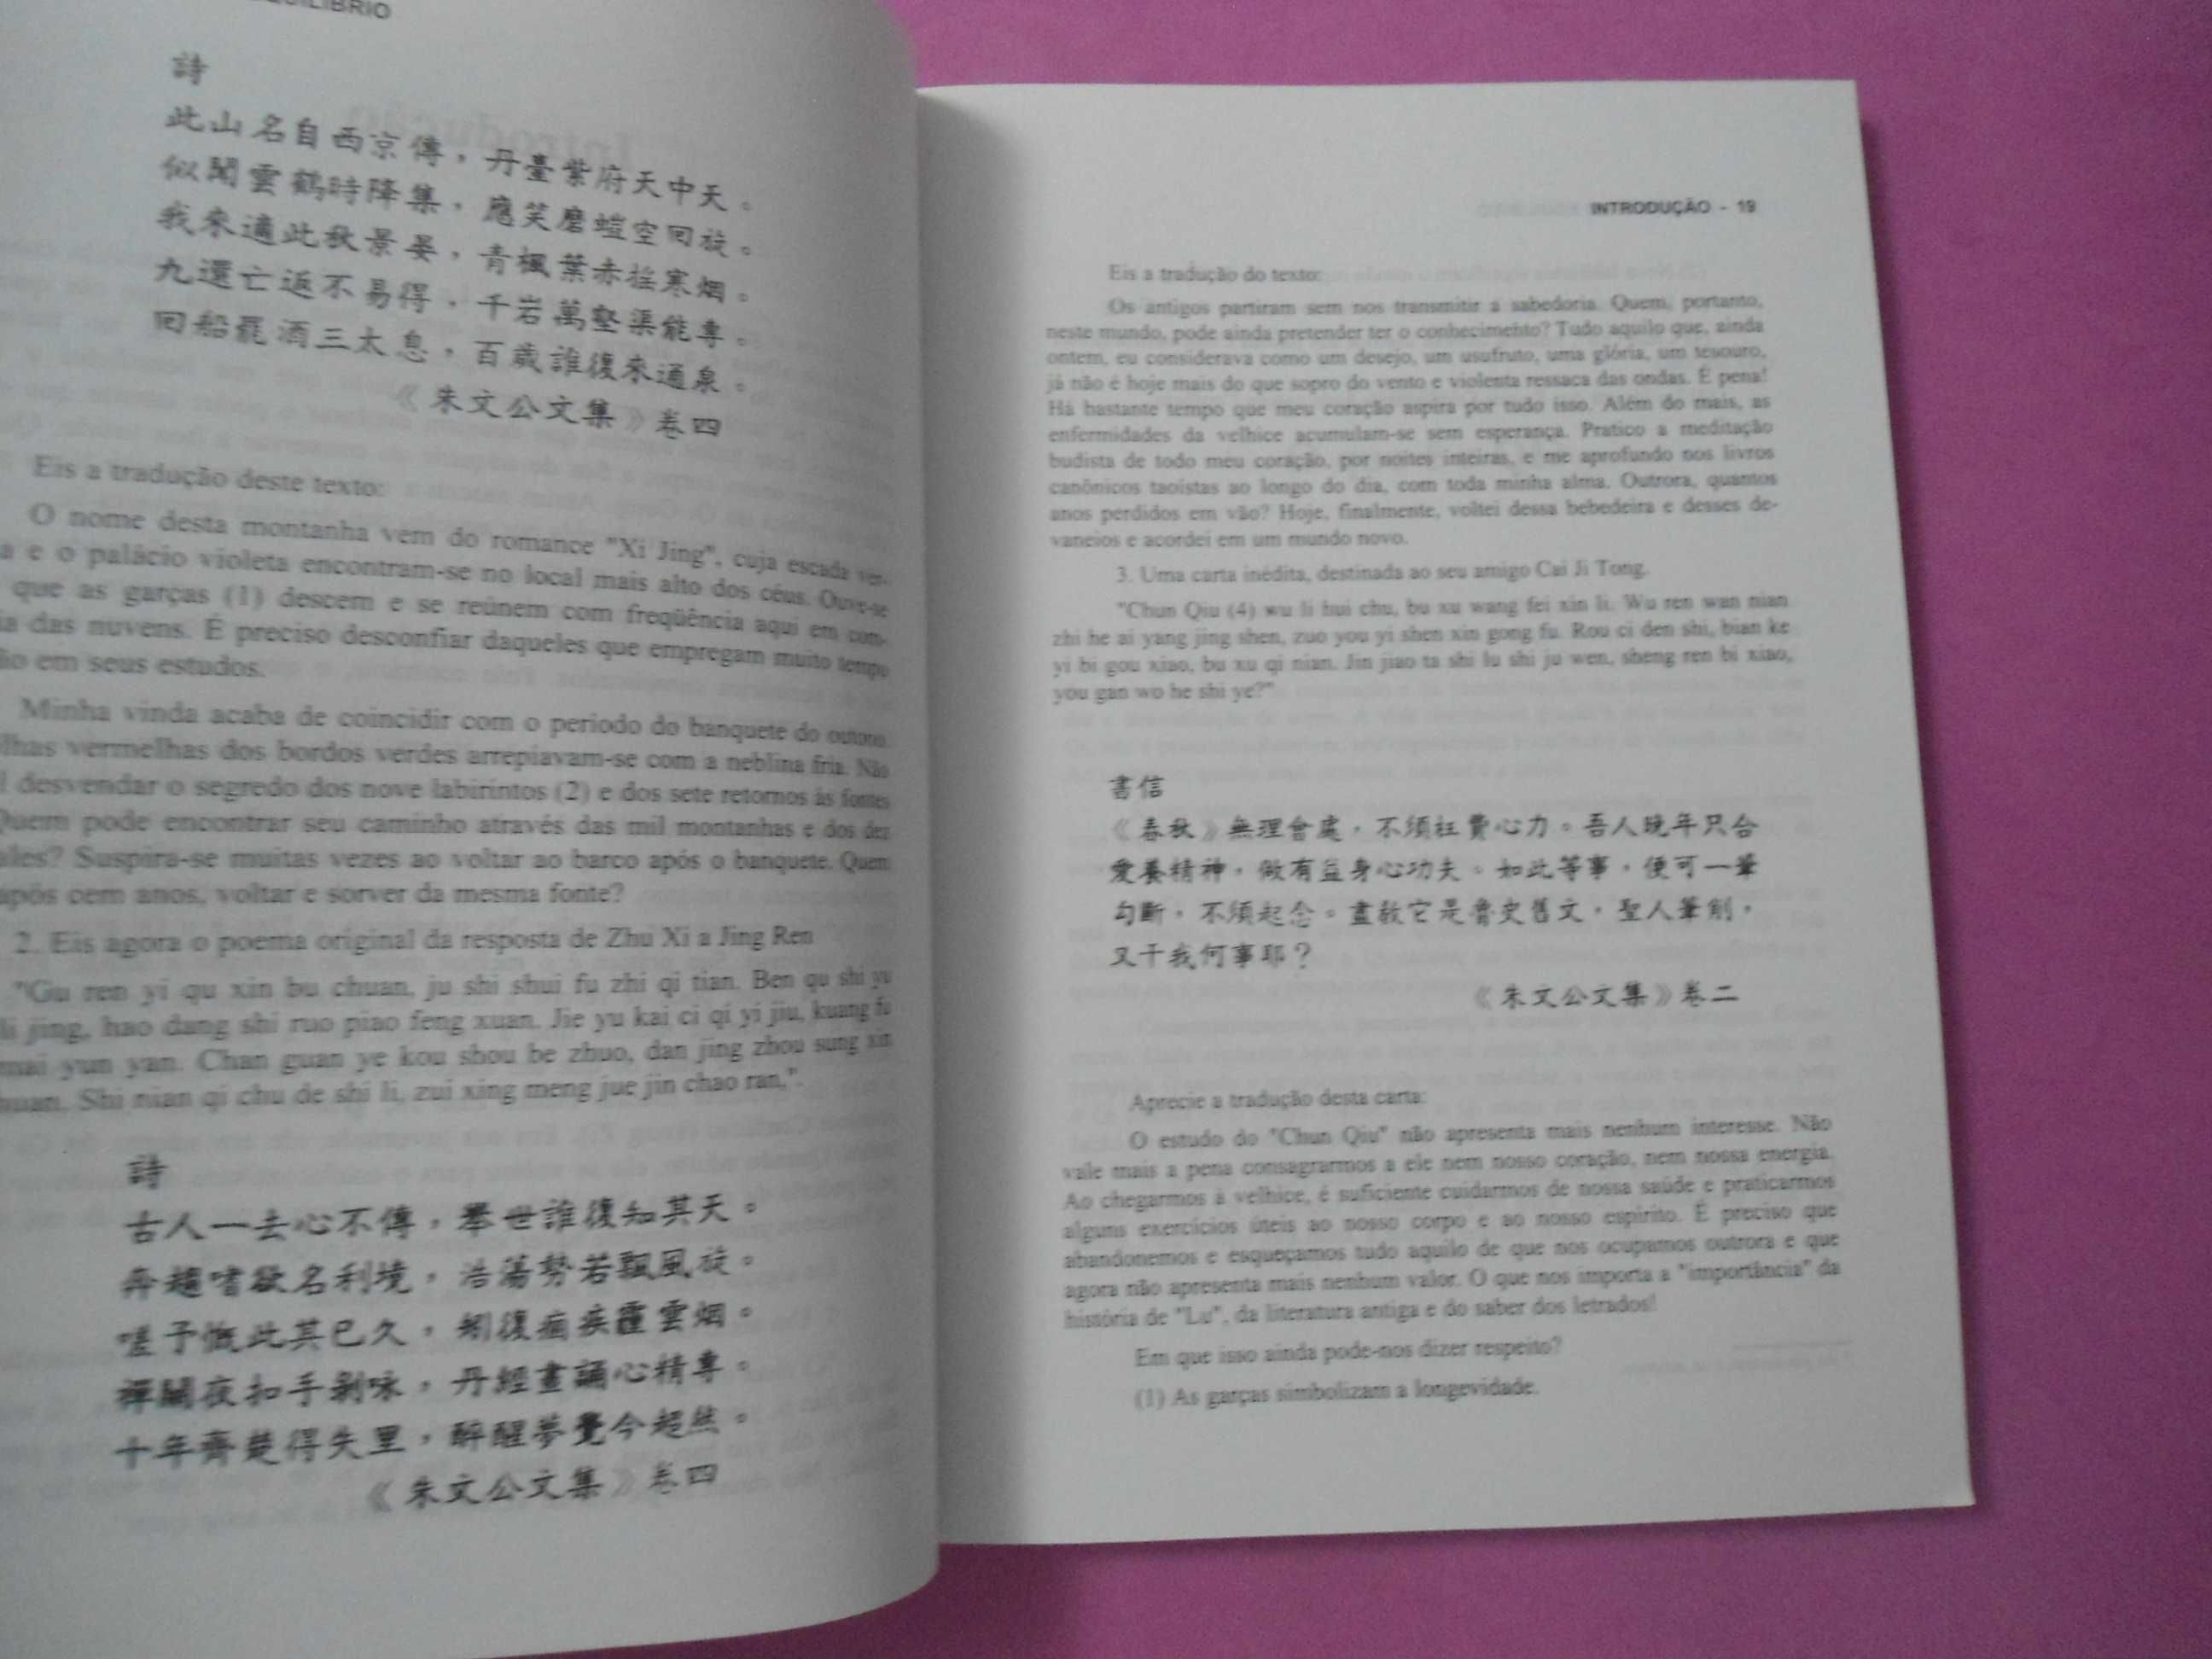 A Caminho do equilíbrio (medicina chinesa) de Tong Juo Shian